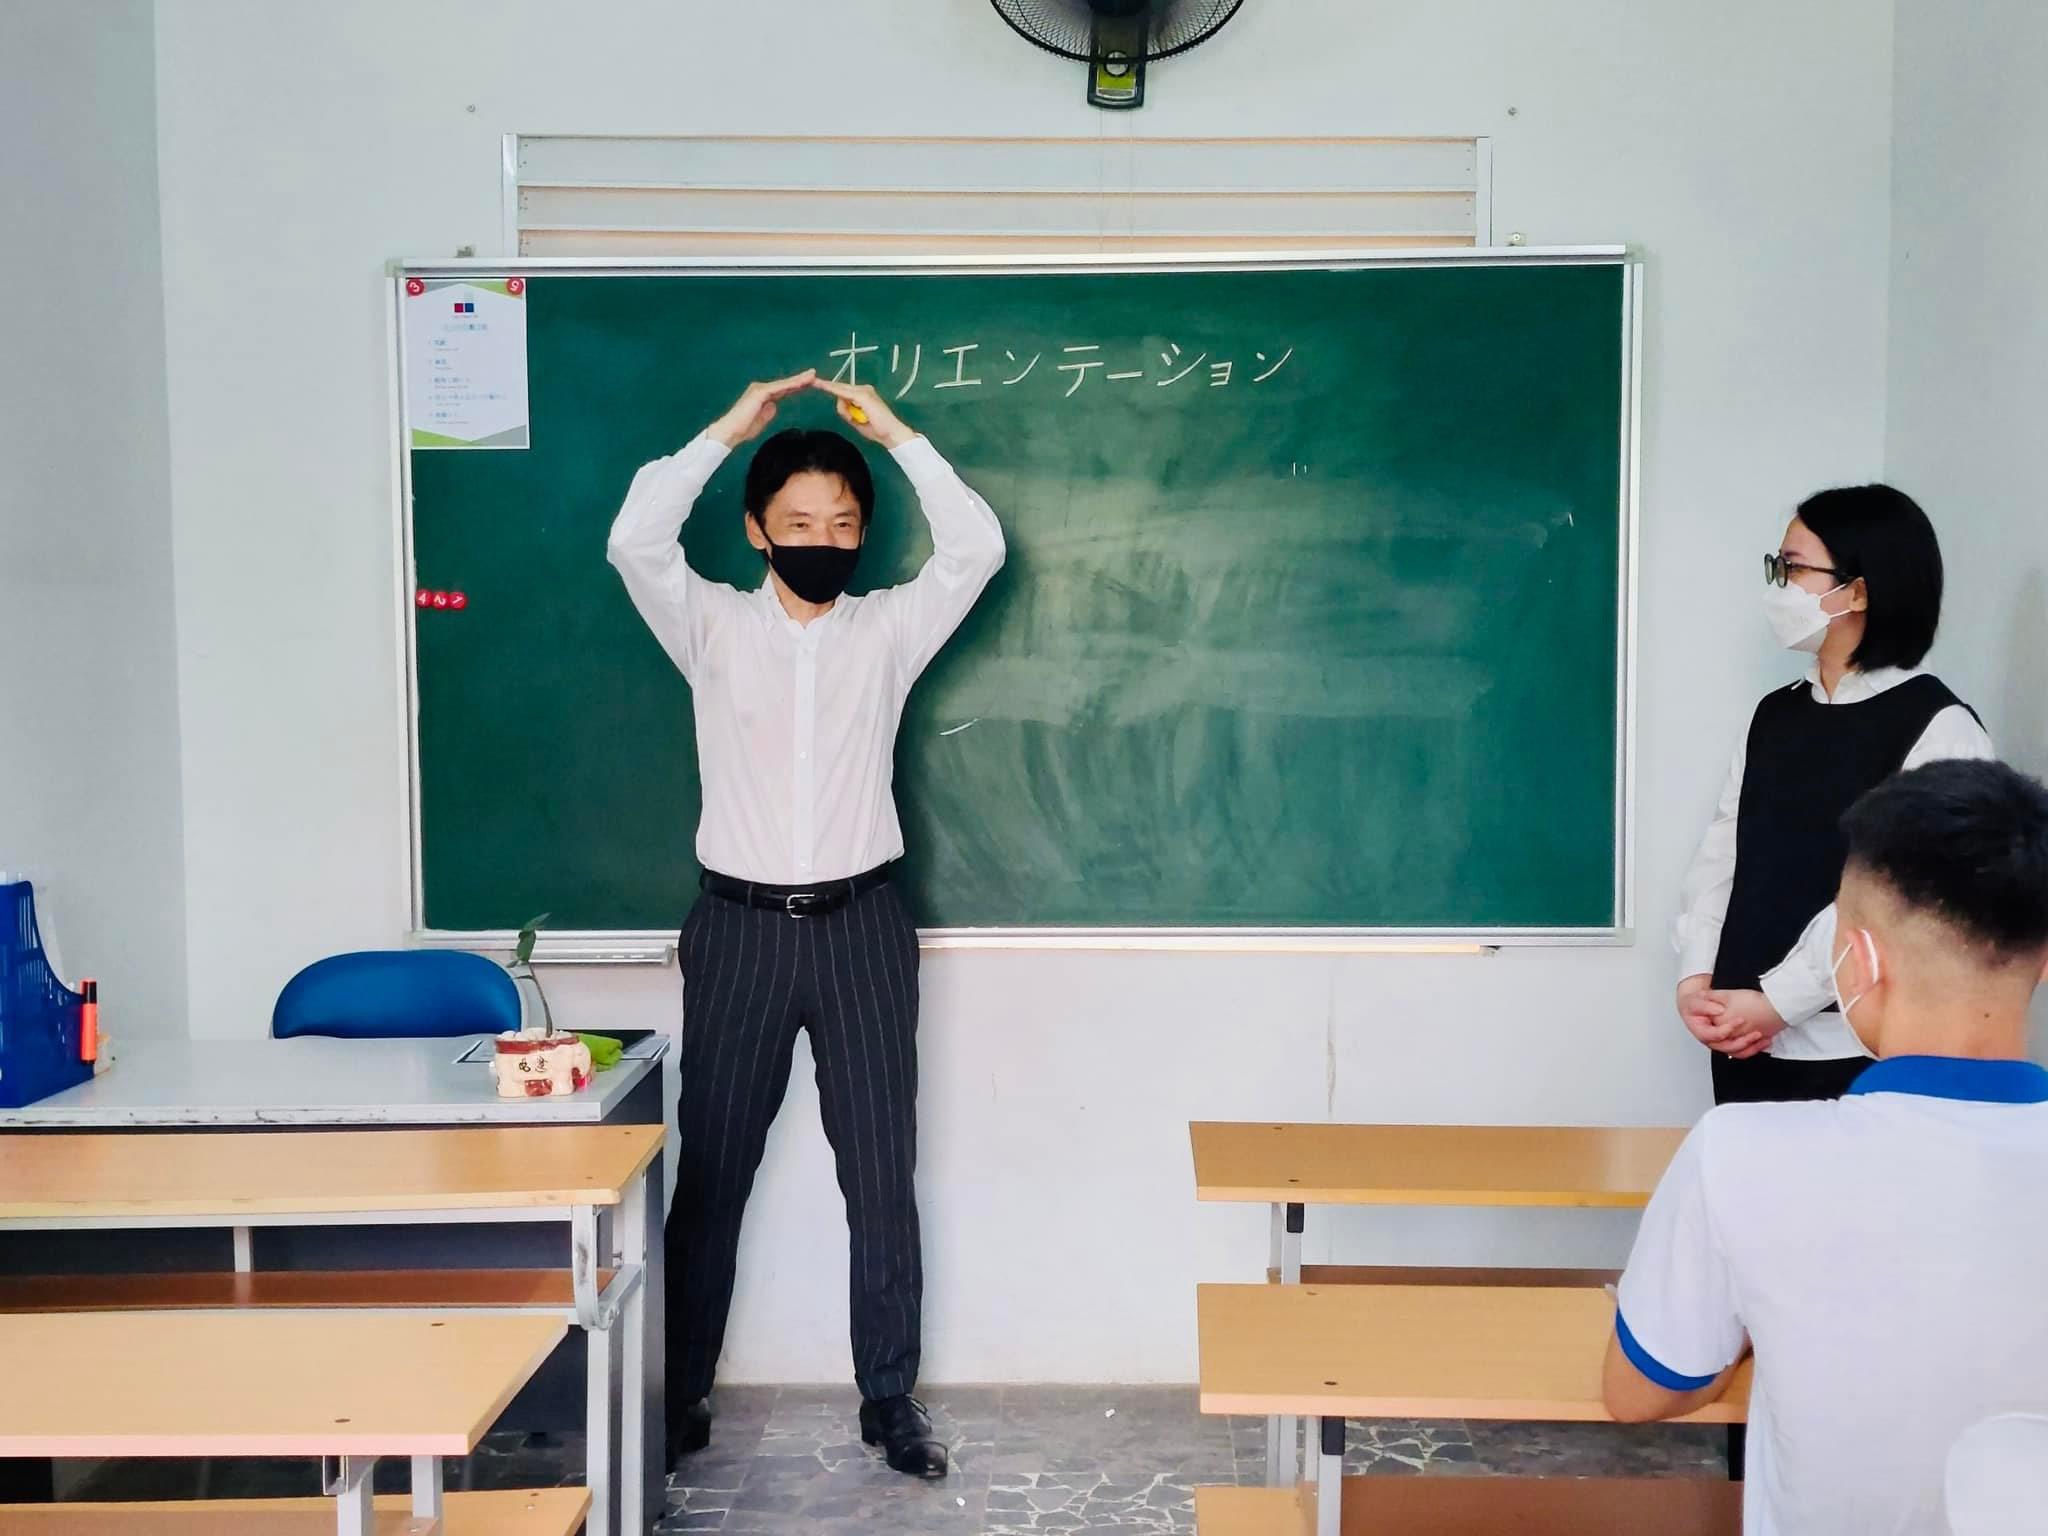 Tuyển dụng Giáo viên Tiếng Nhật giảng dạy tại Trung tâm Hồng Hà